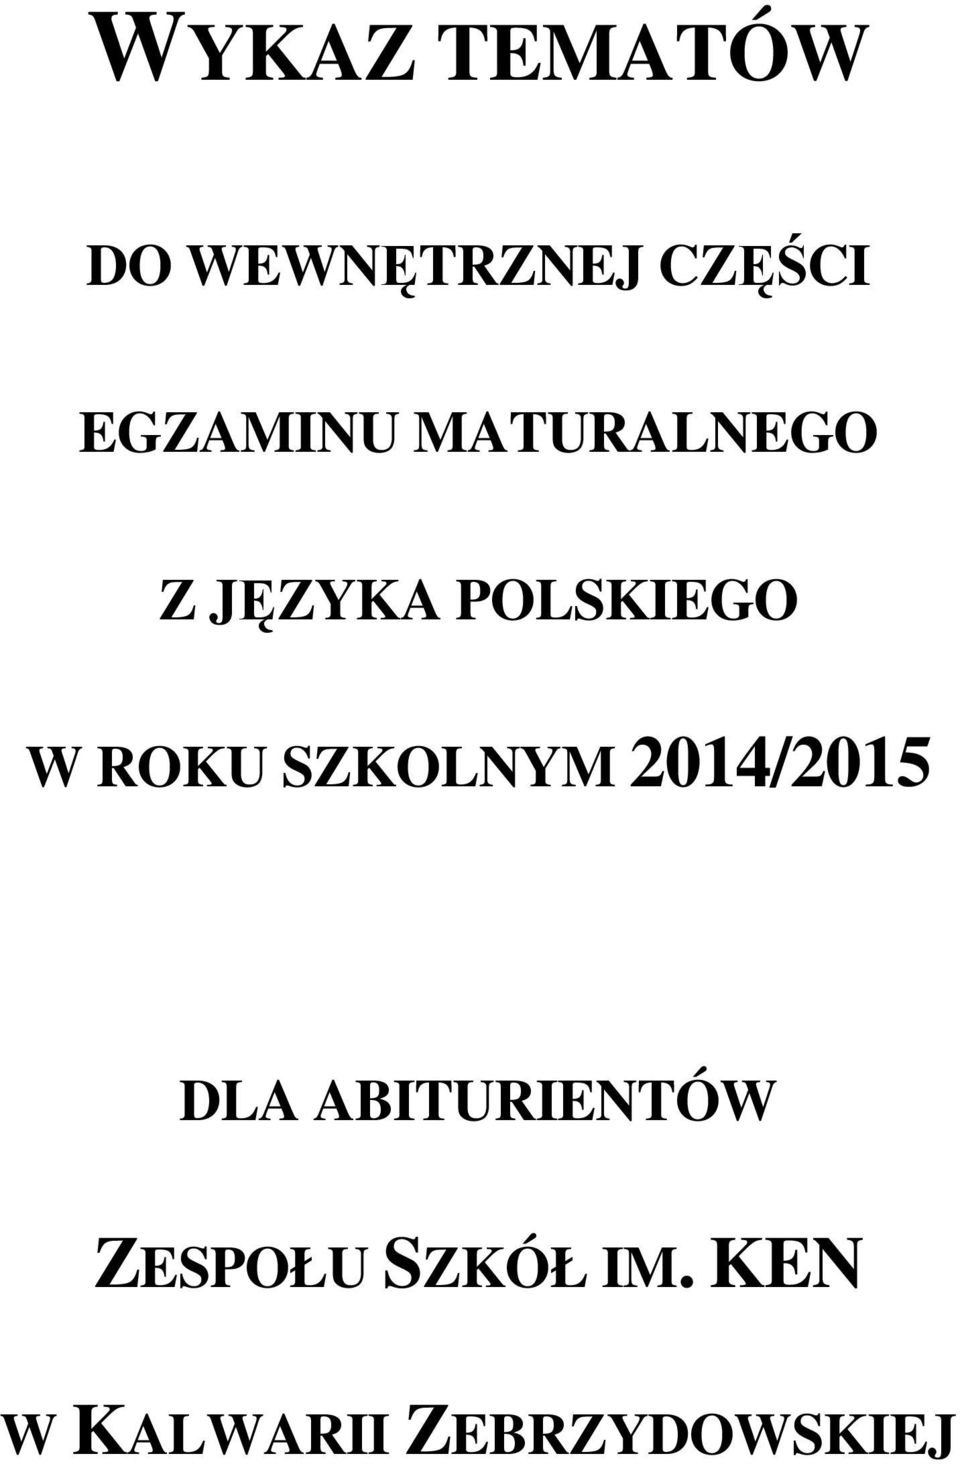 ROKU SZKOLNYM 2014/2015 DLA ABITURIENTÓW